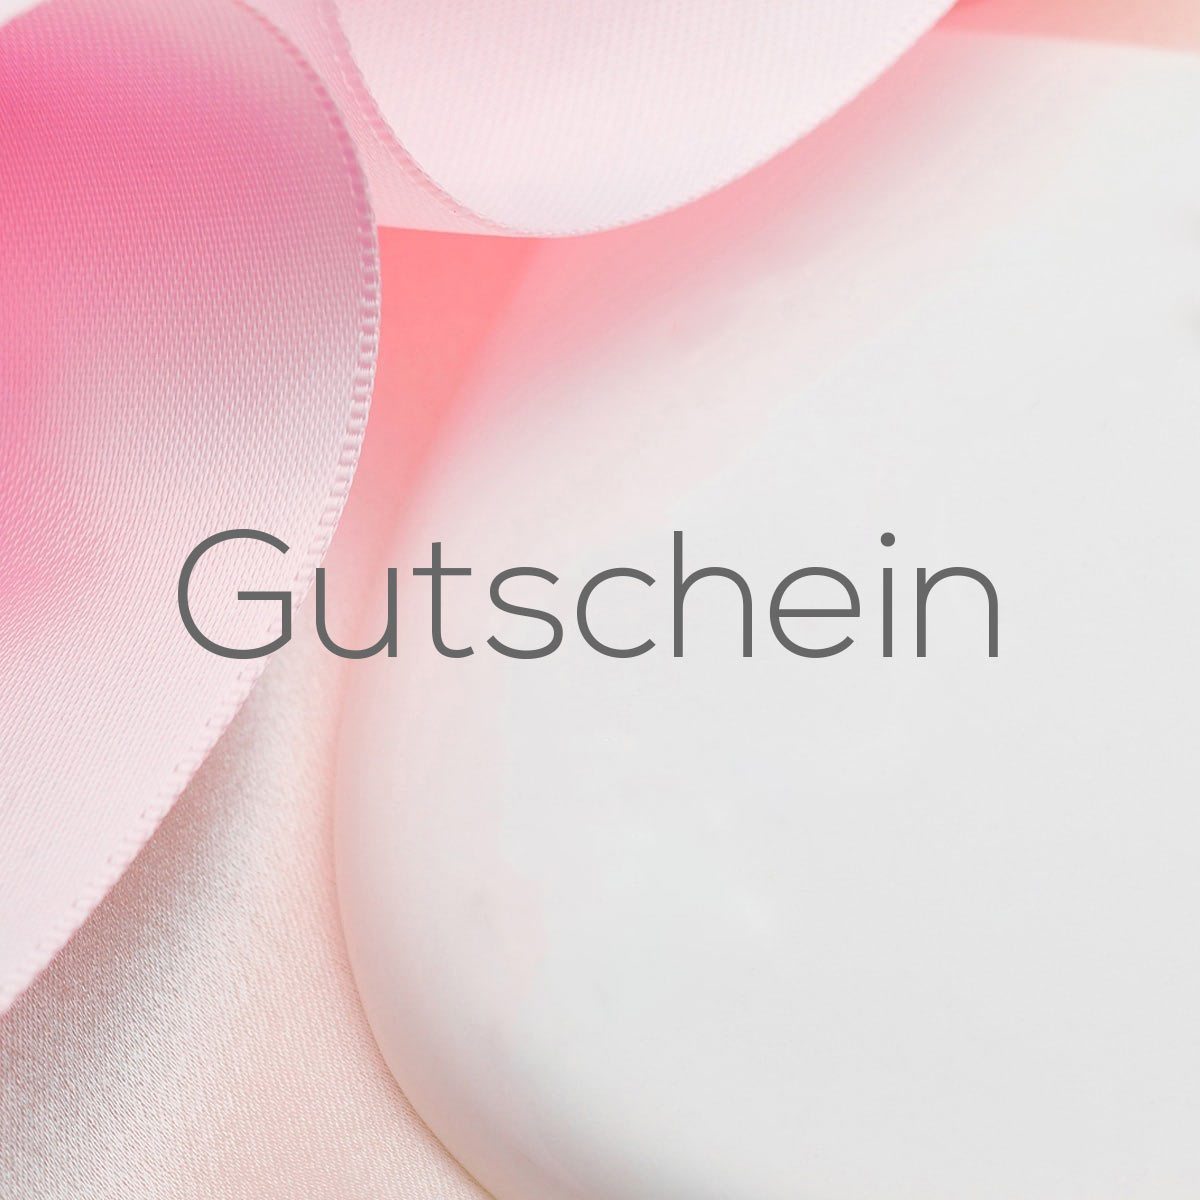 Gutschein / Giftcard